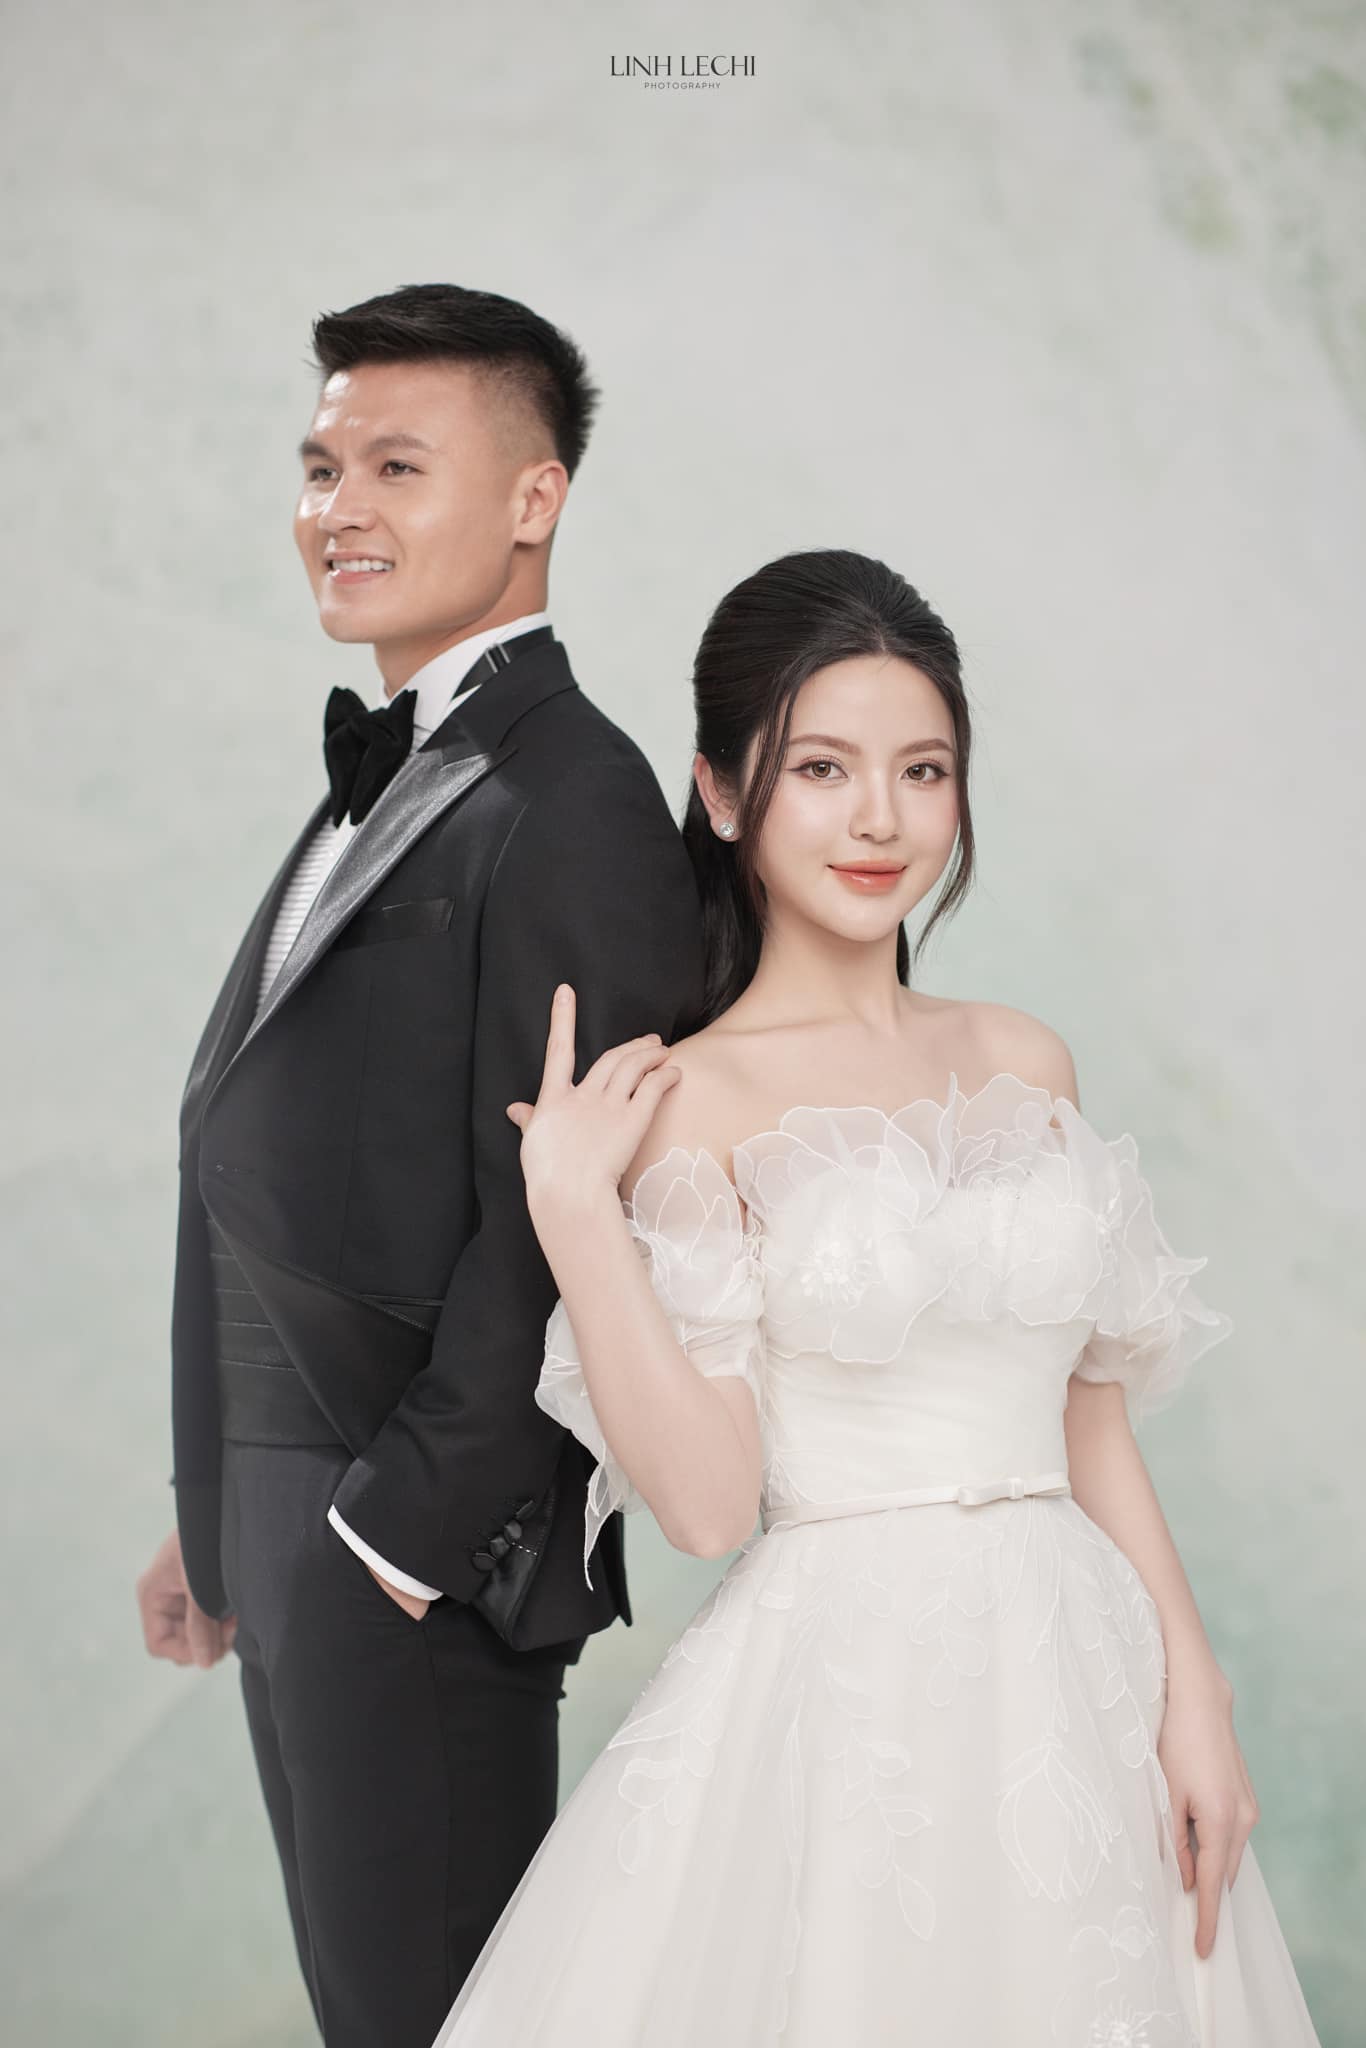 Ảnh cưới của Quang Hải và Chu Thanh Huyền có điểm này giống hệt với ảnh của Đoàn Văn Hậu và Doãn Hải My- Ảnh 1.